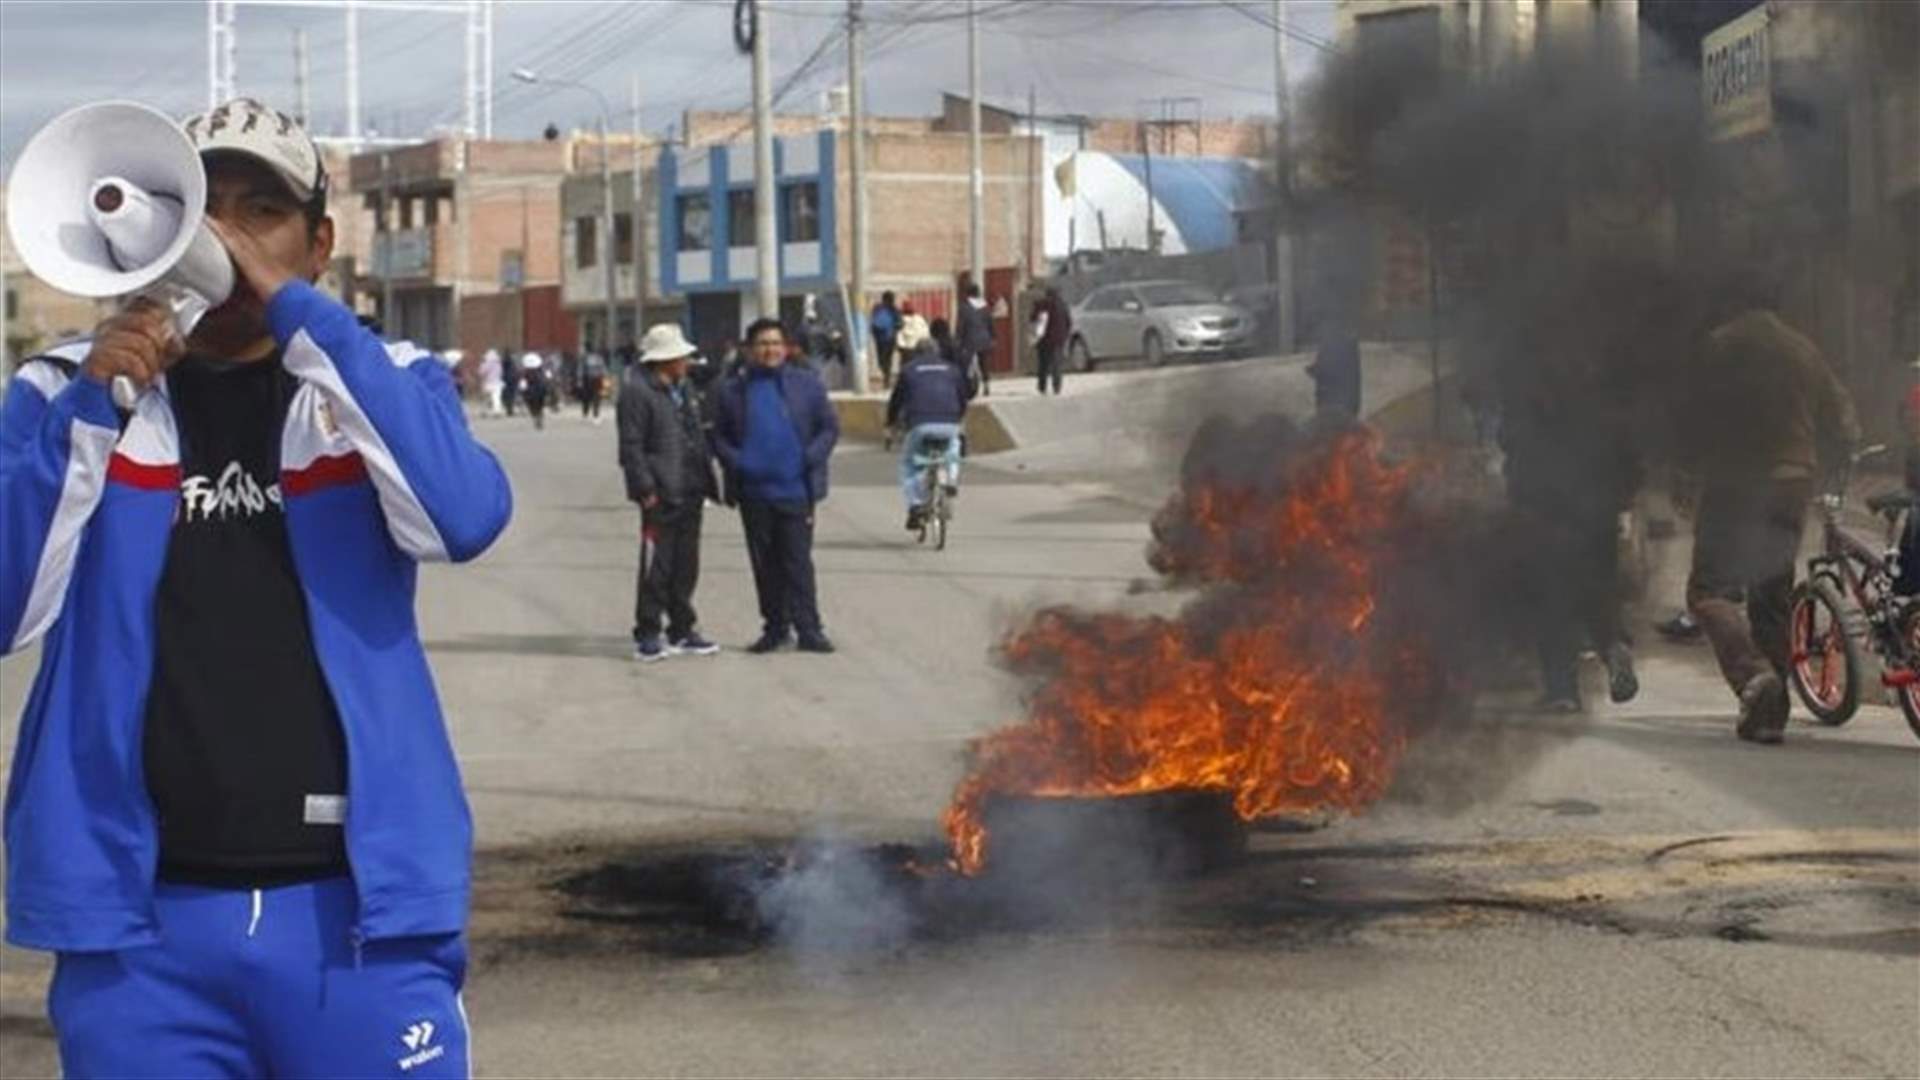 رئيسة البيرو تدعو إلى الحوار لانهاء التظاهرات